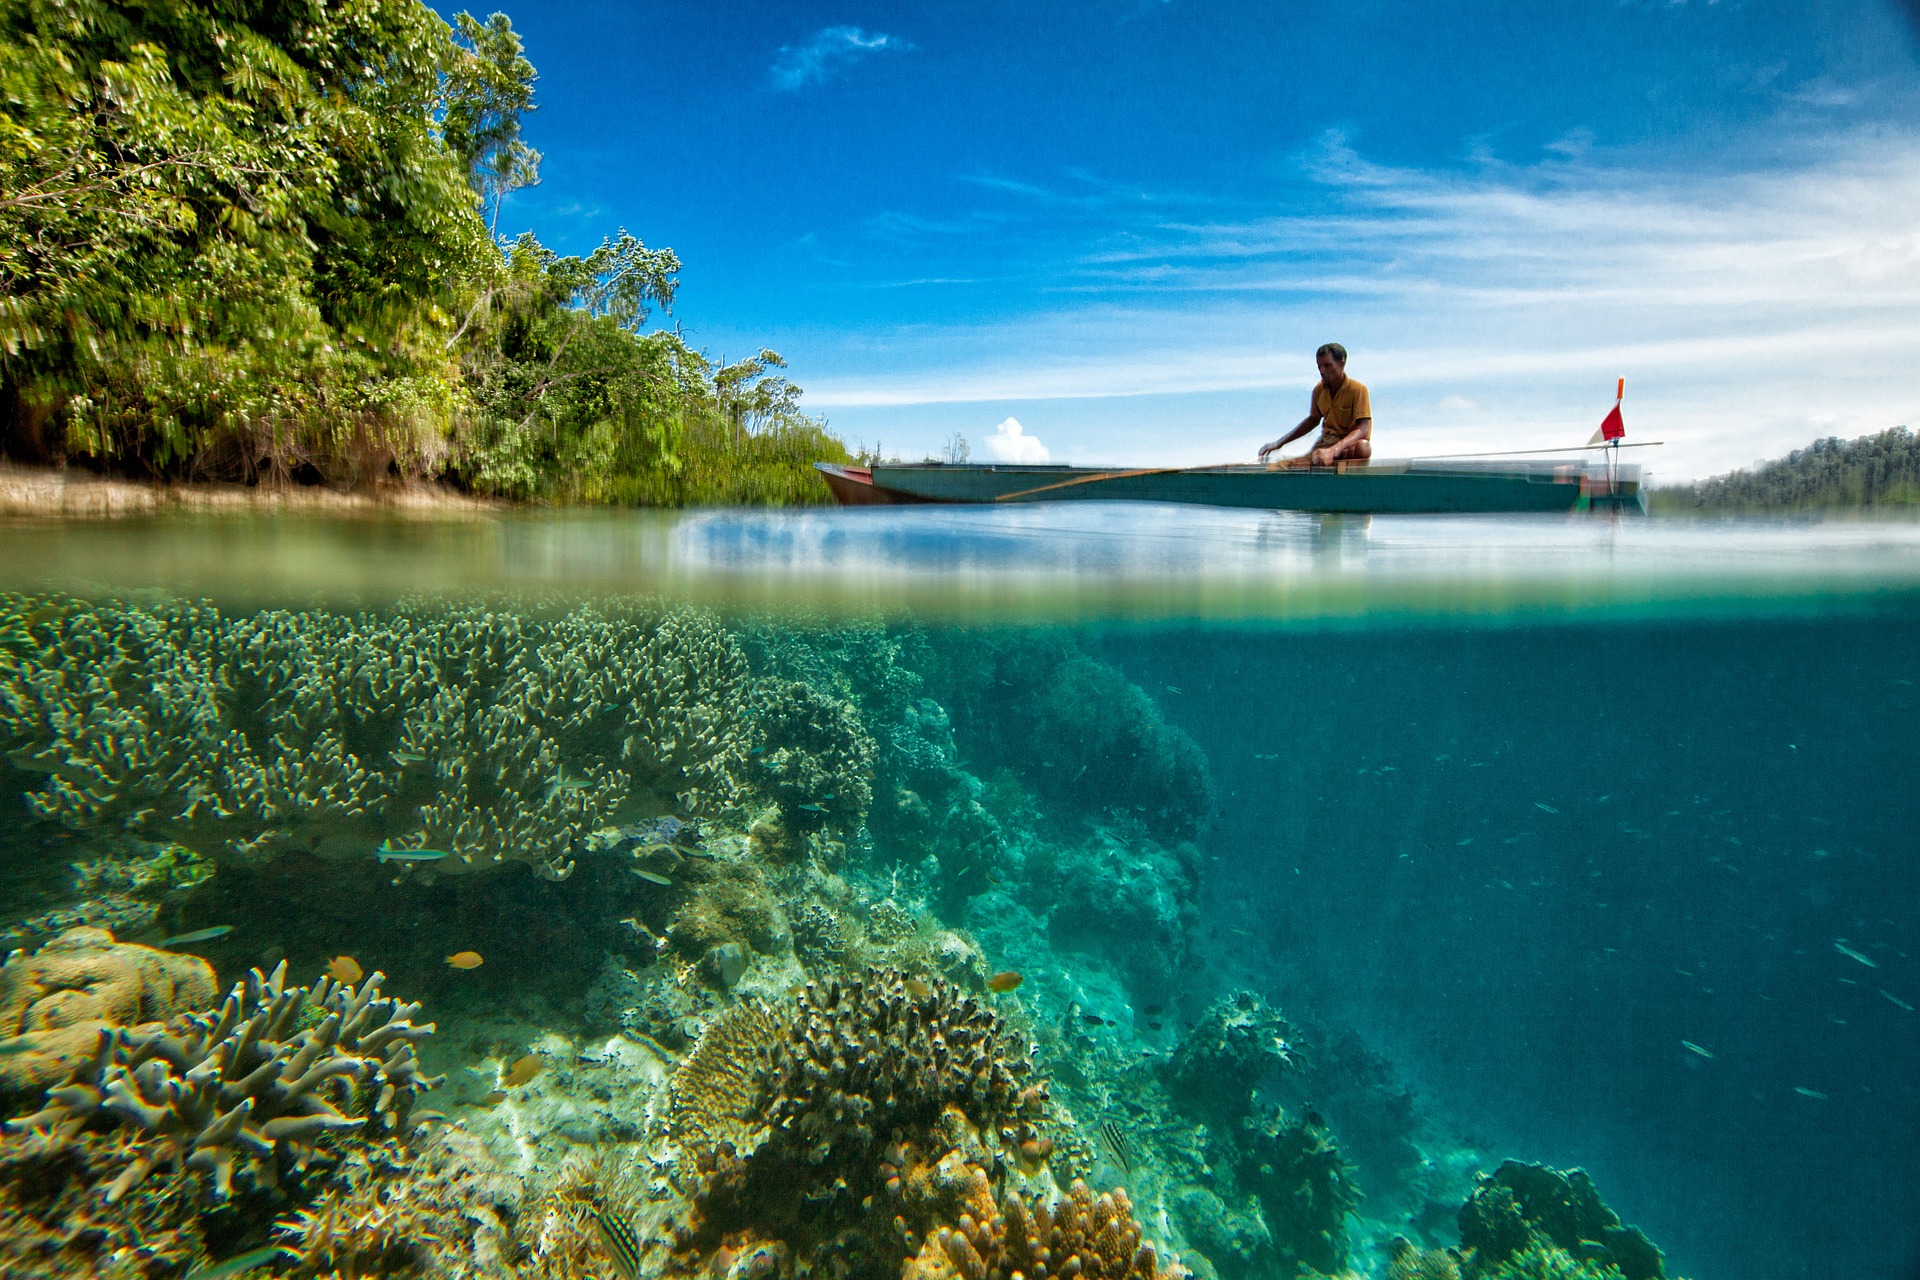 Protégez votre peau pour cet été et respectez les récifs coralliens